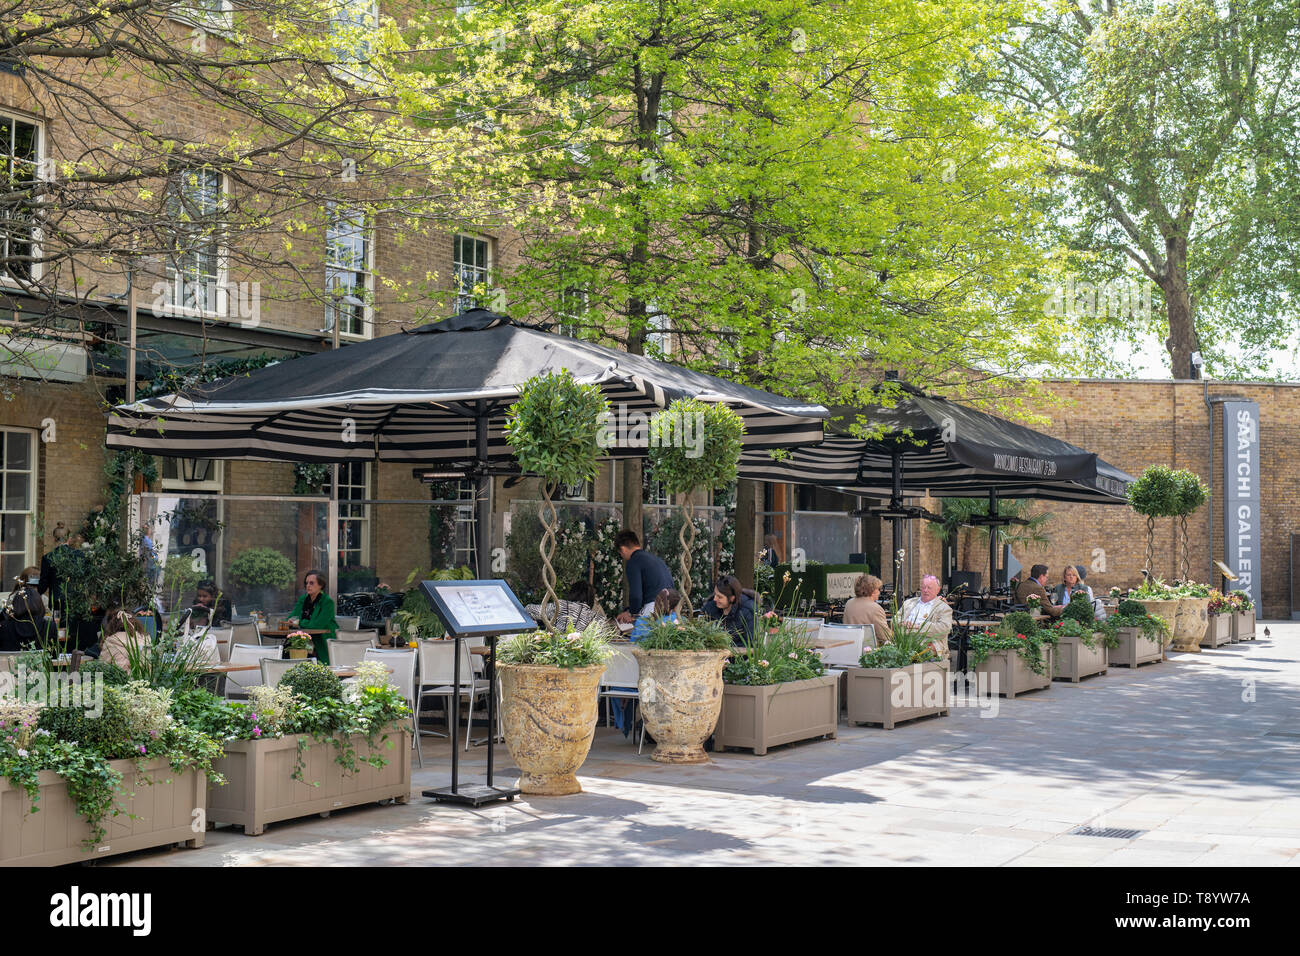 Vasi per piante e alberi in primavera al di fuori del Manicomio ristorante, Duke of York Square, a Chelsea, Londra, Inghilterra Foto Stock